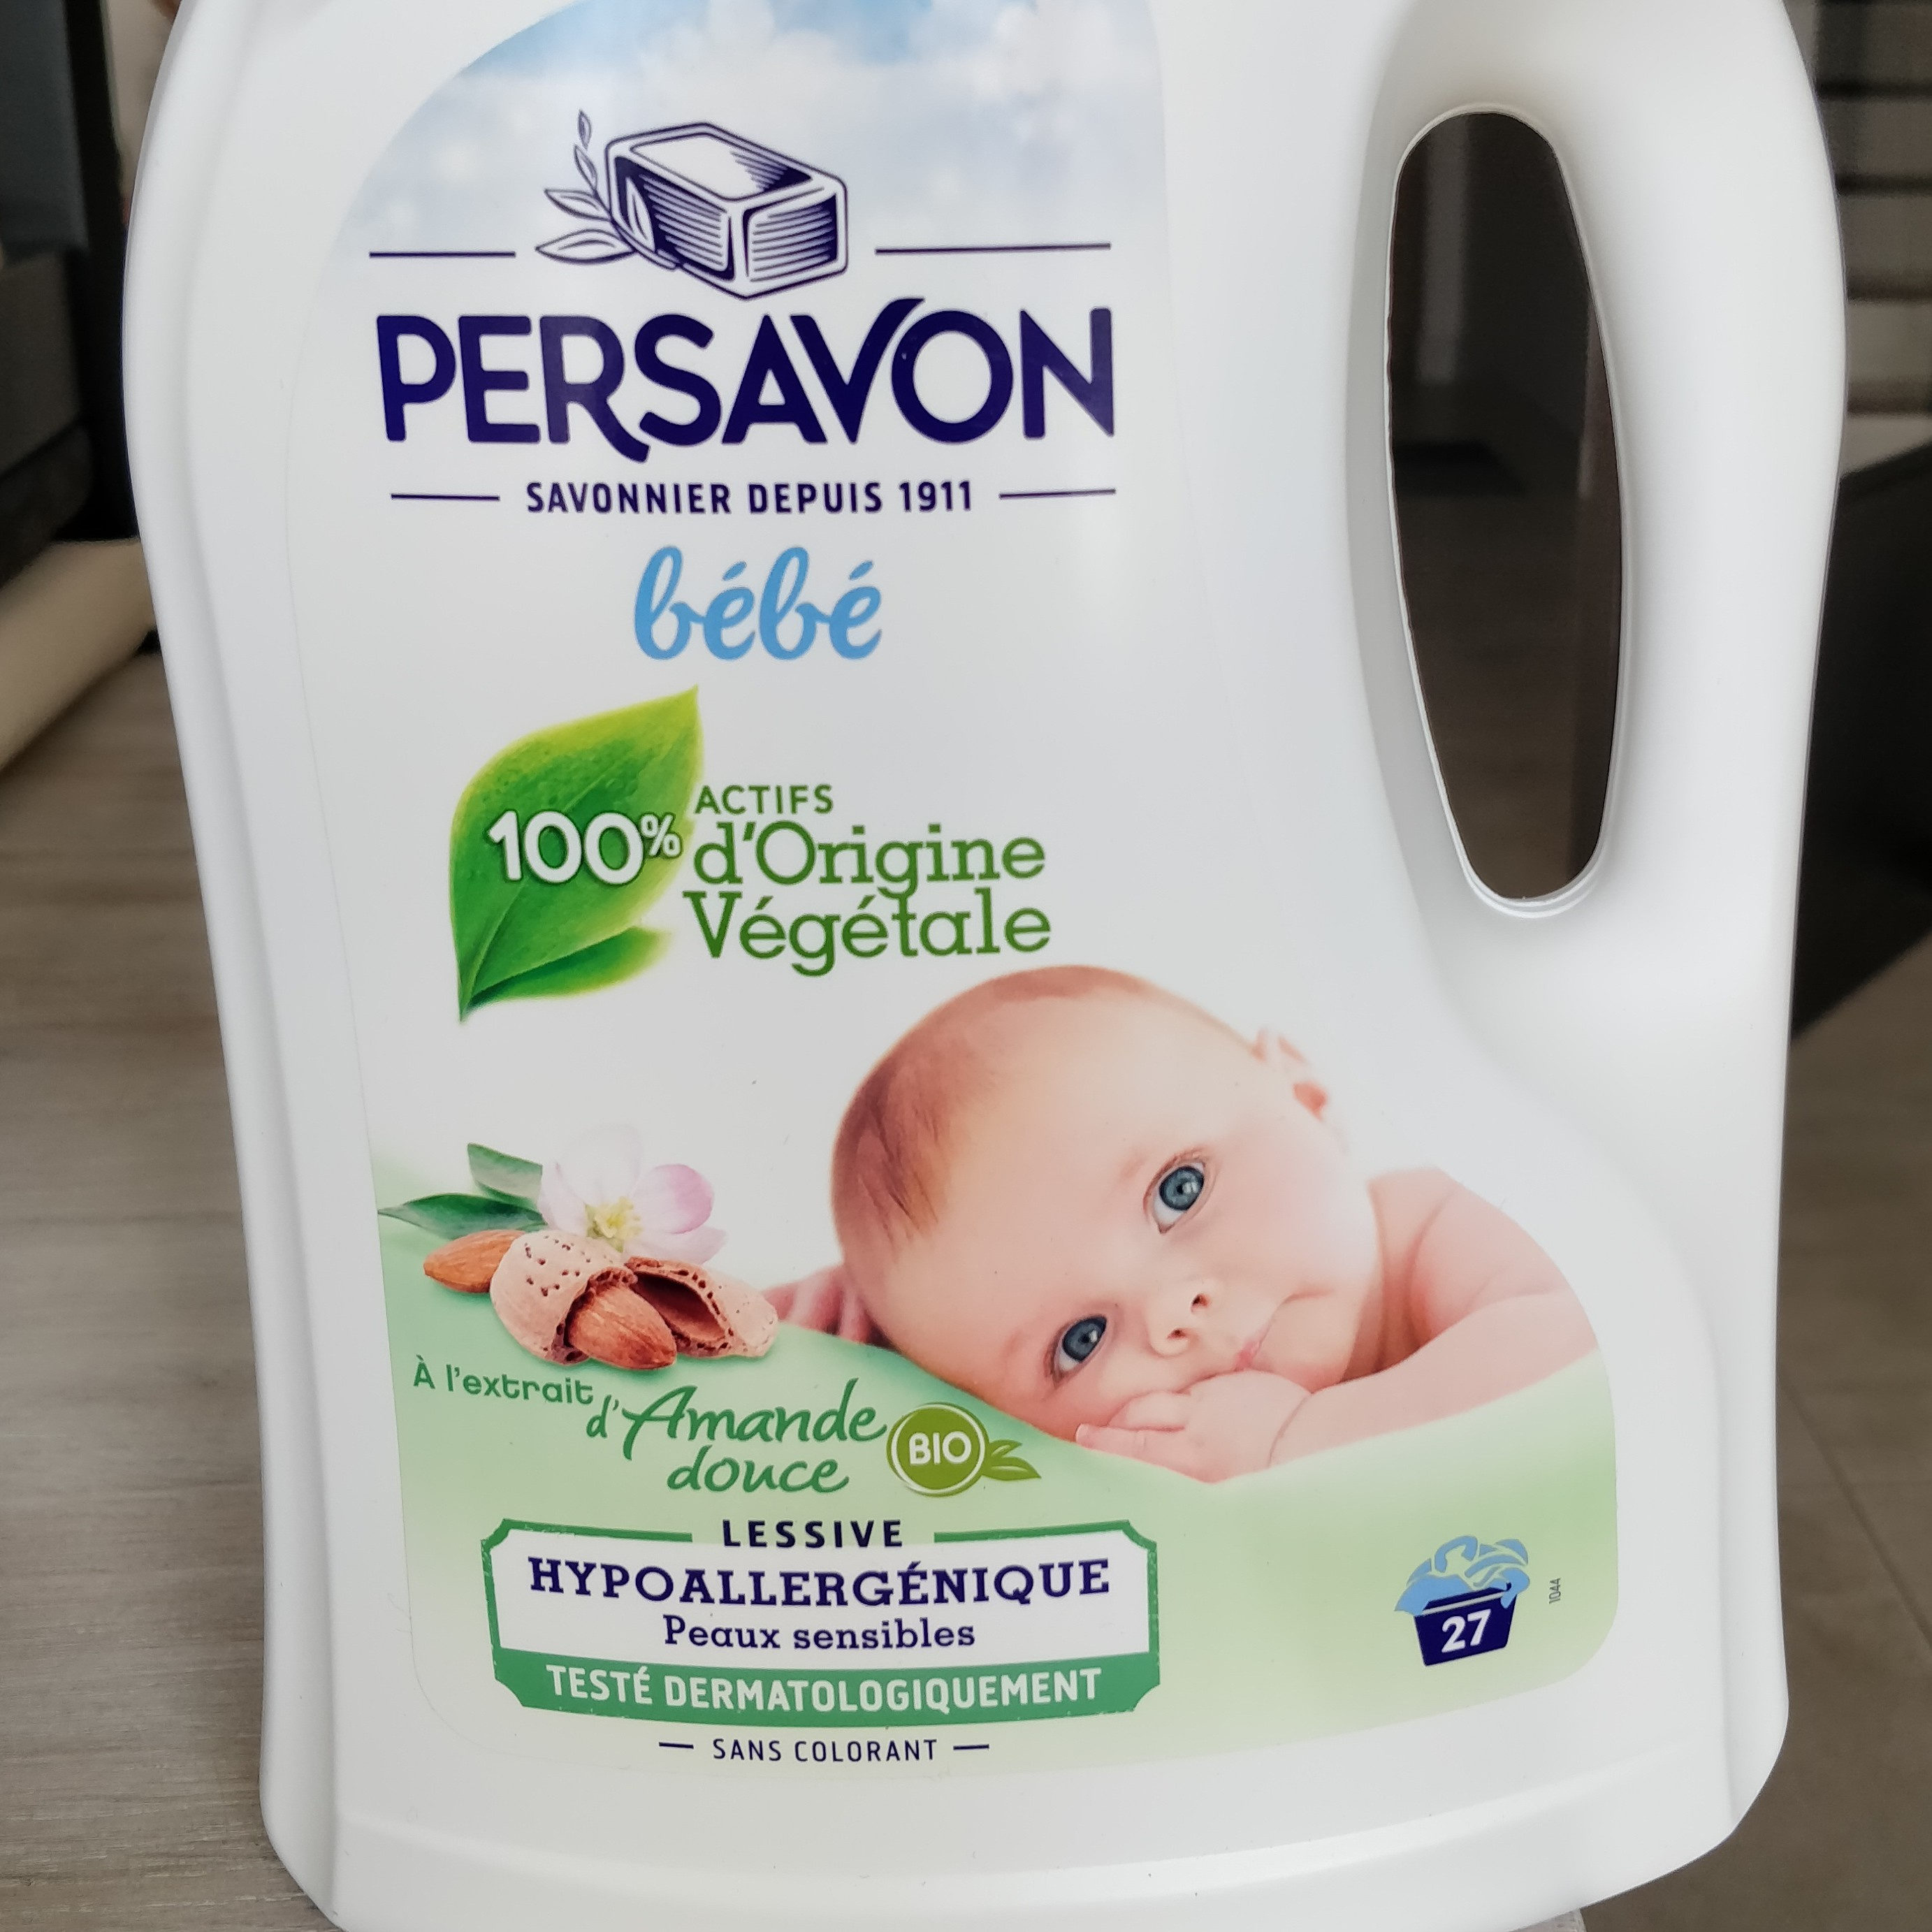 Lessive hypoallergénique Peaux Sensibles Bébé à l'extrait d'amande douce - Product - fr